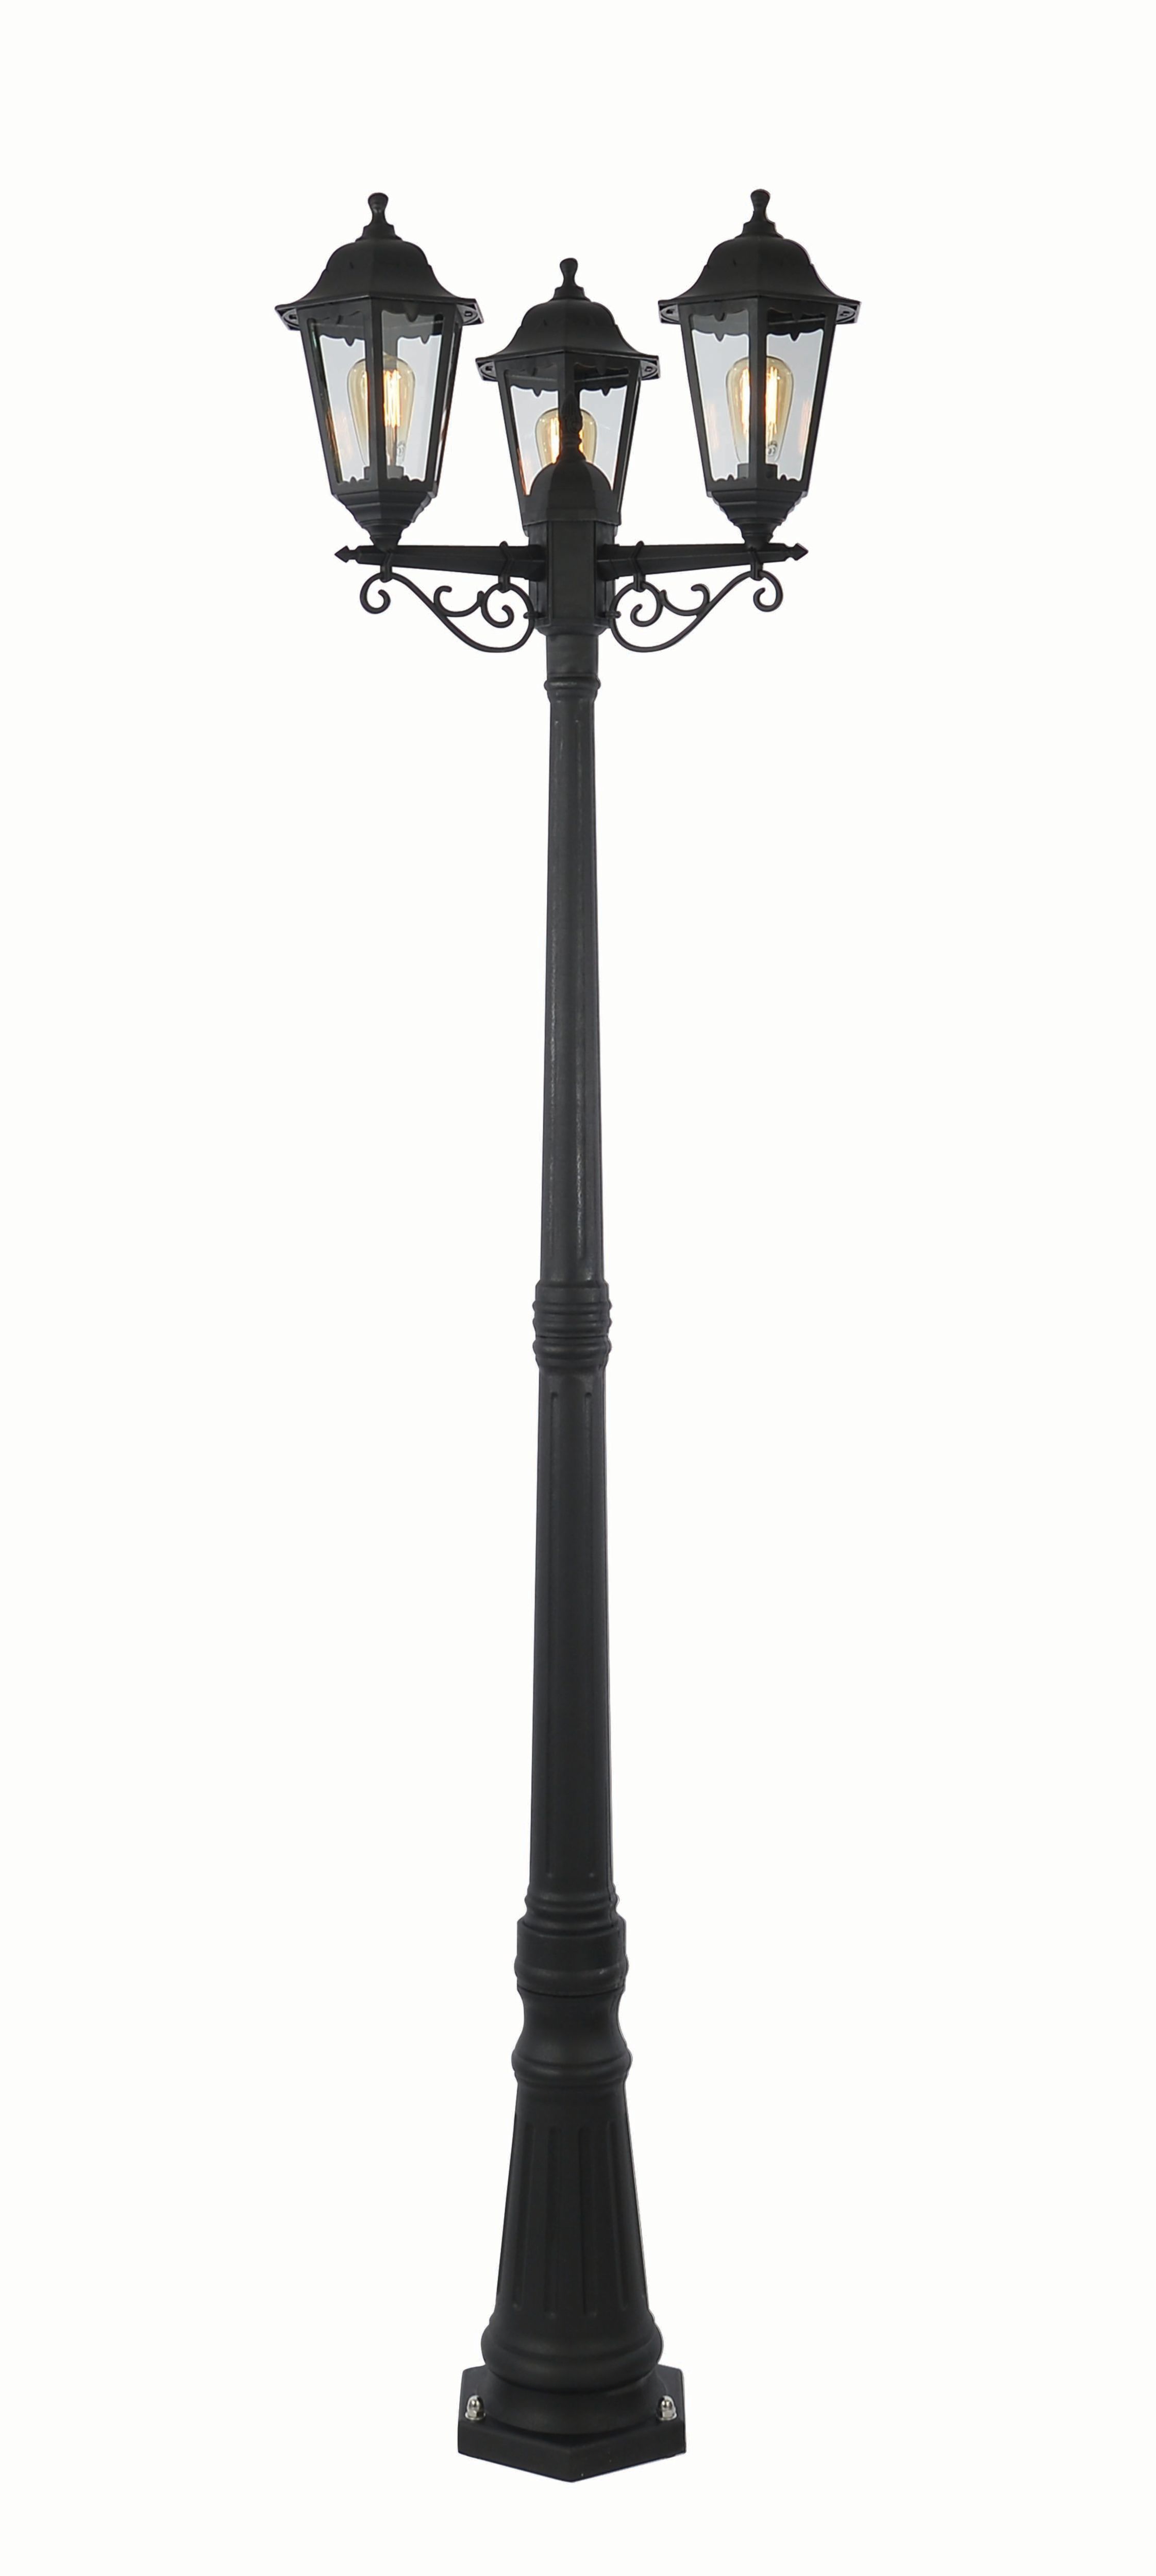 Image of Coast Bianca Tall Post Lantern Black - 3 x 60W